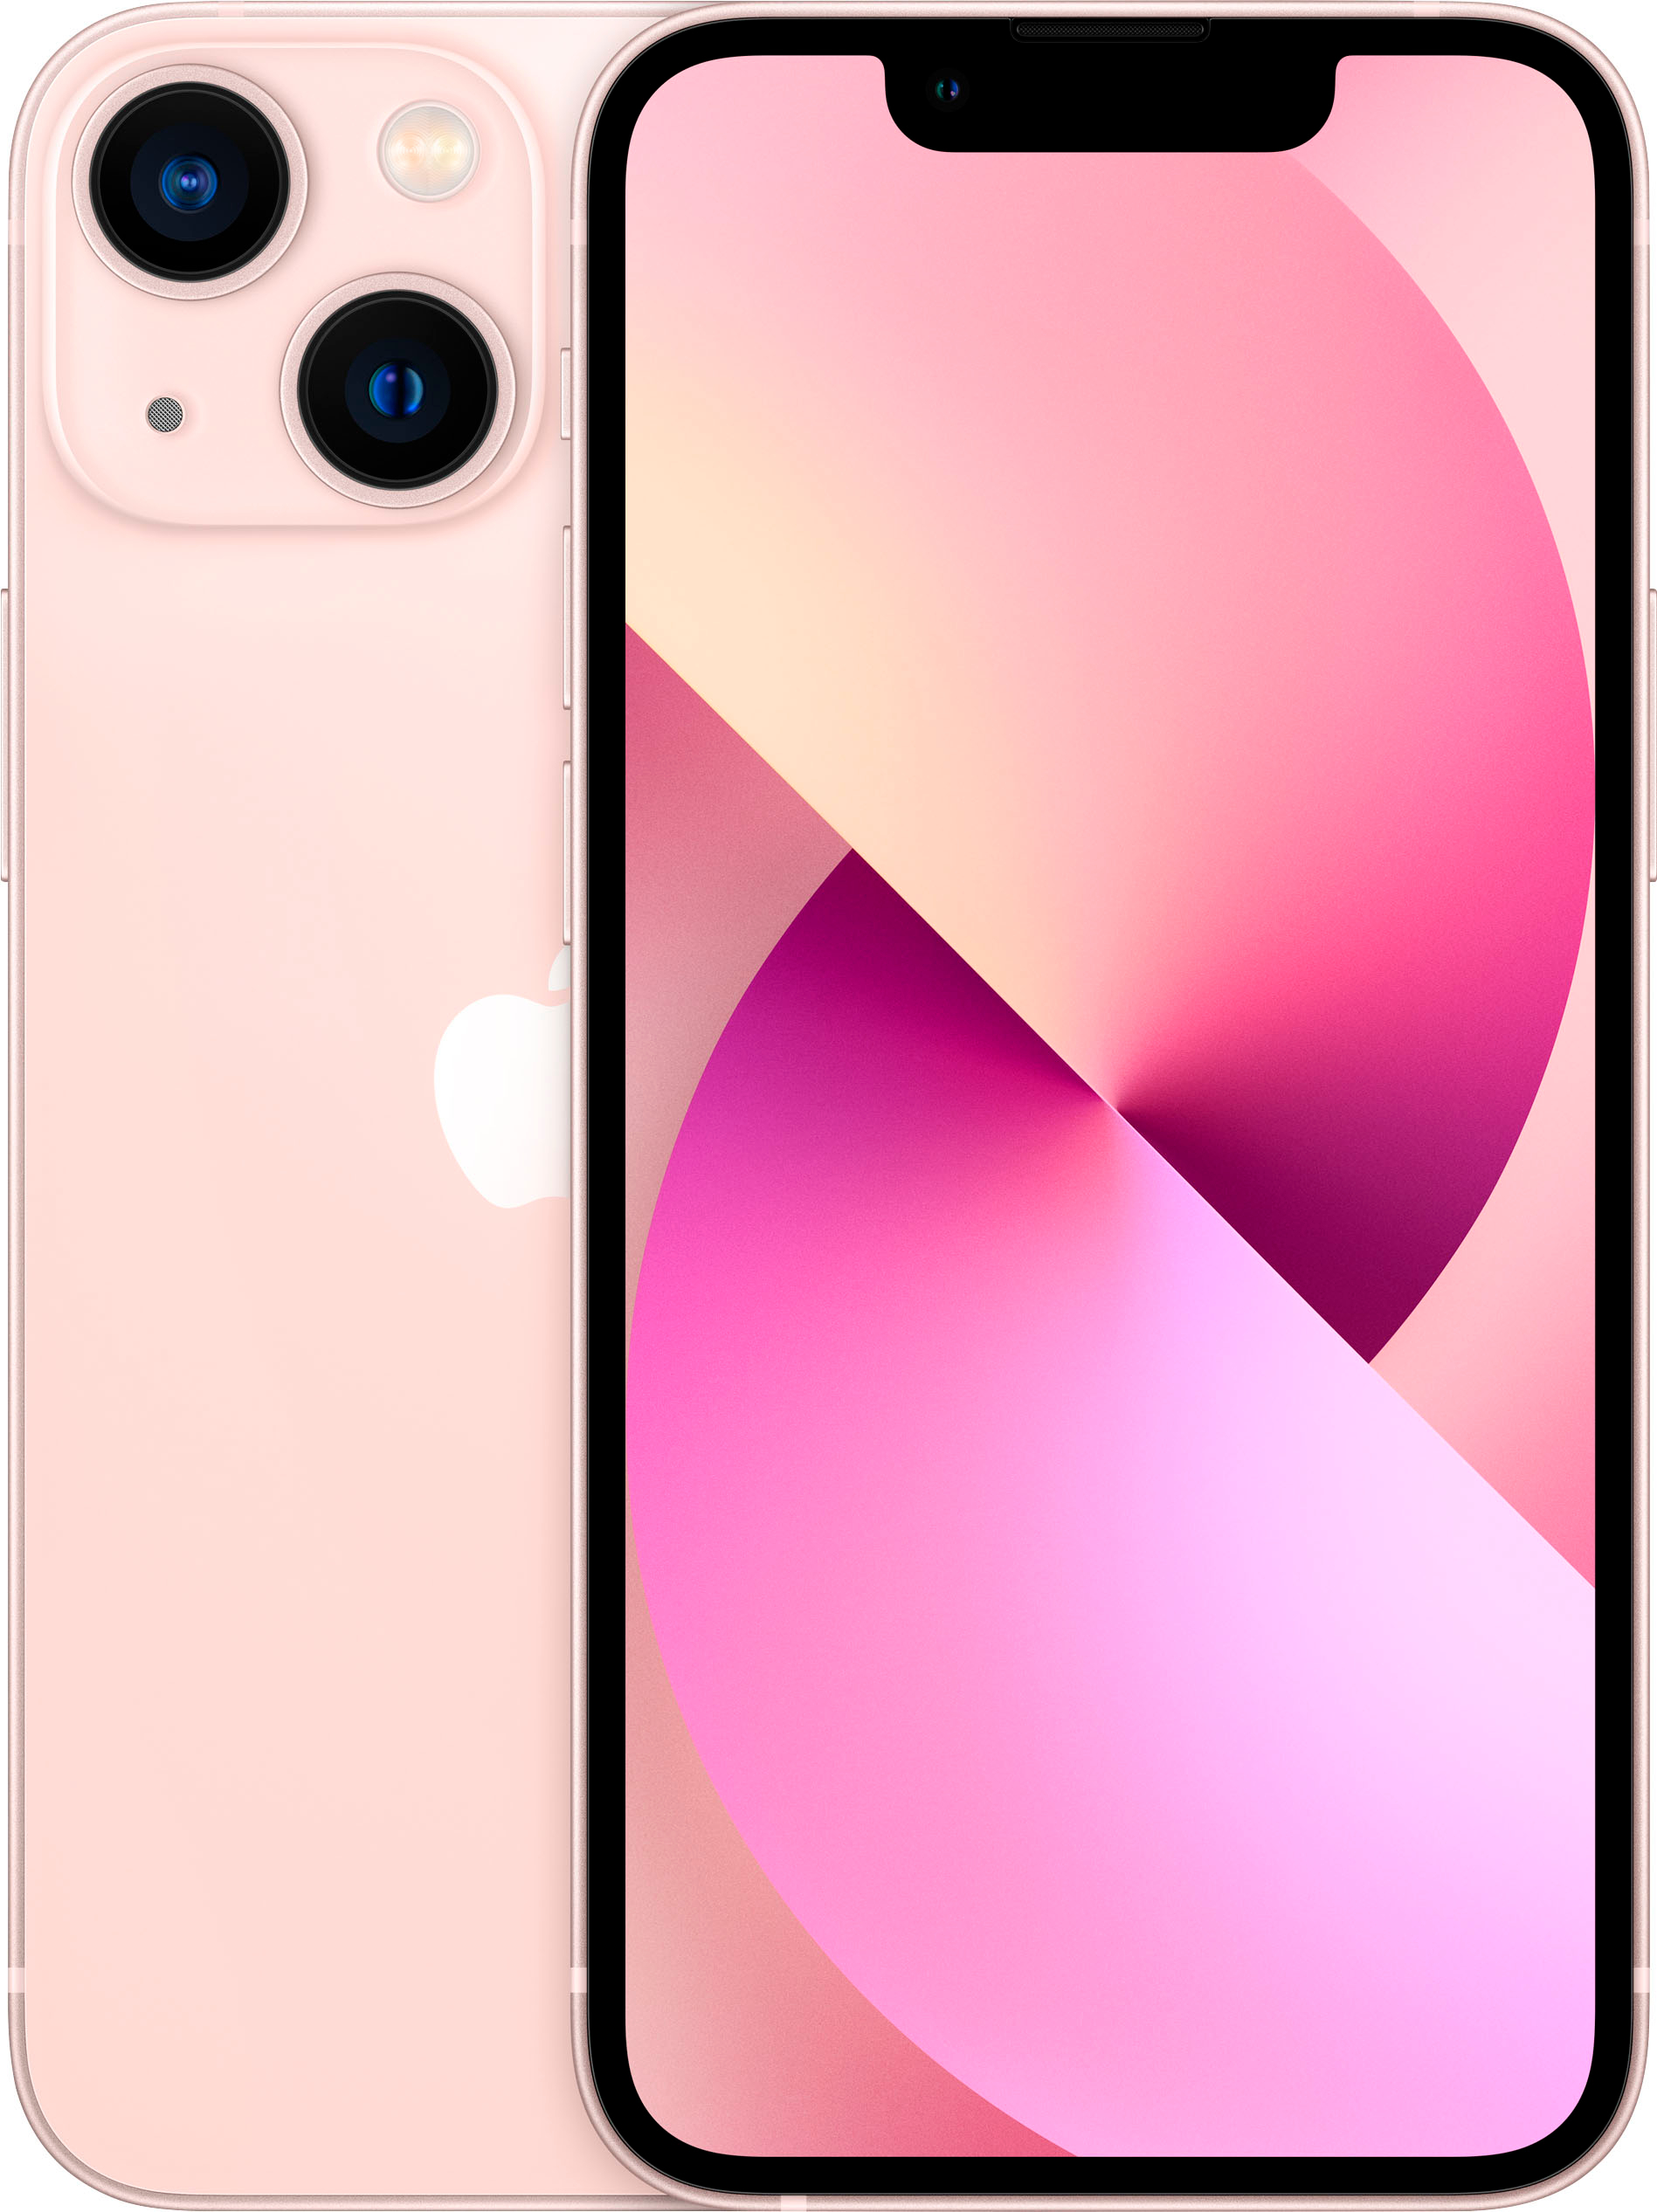 Apple iPhone 13 mini 5G 128GB (Unlocked) Pink MMJ43LL/A - Best